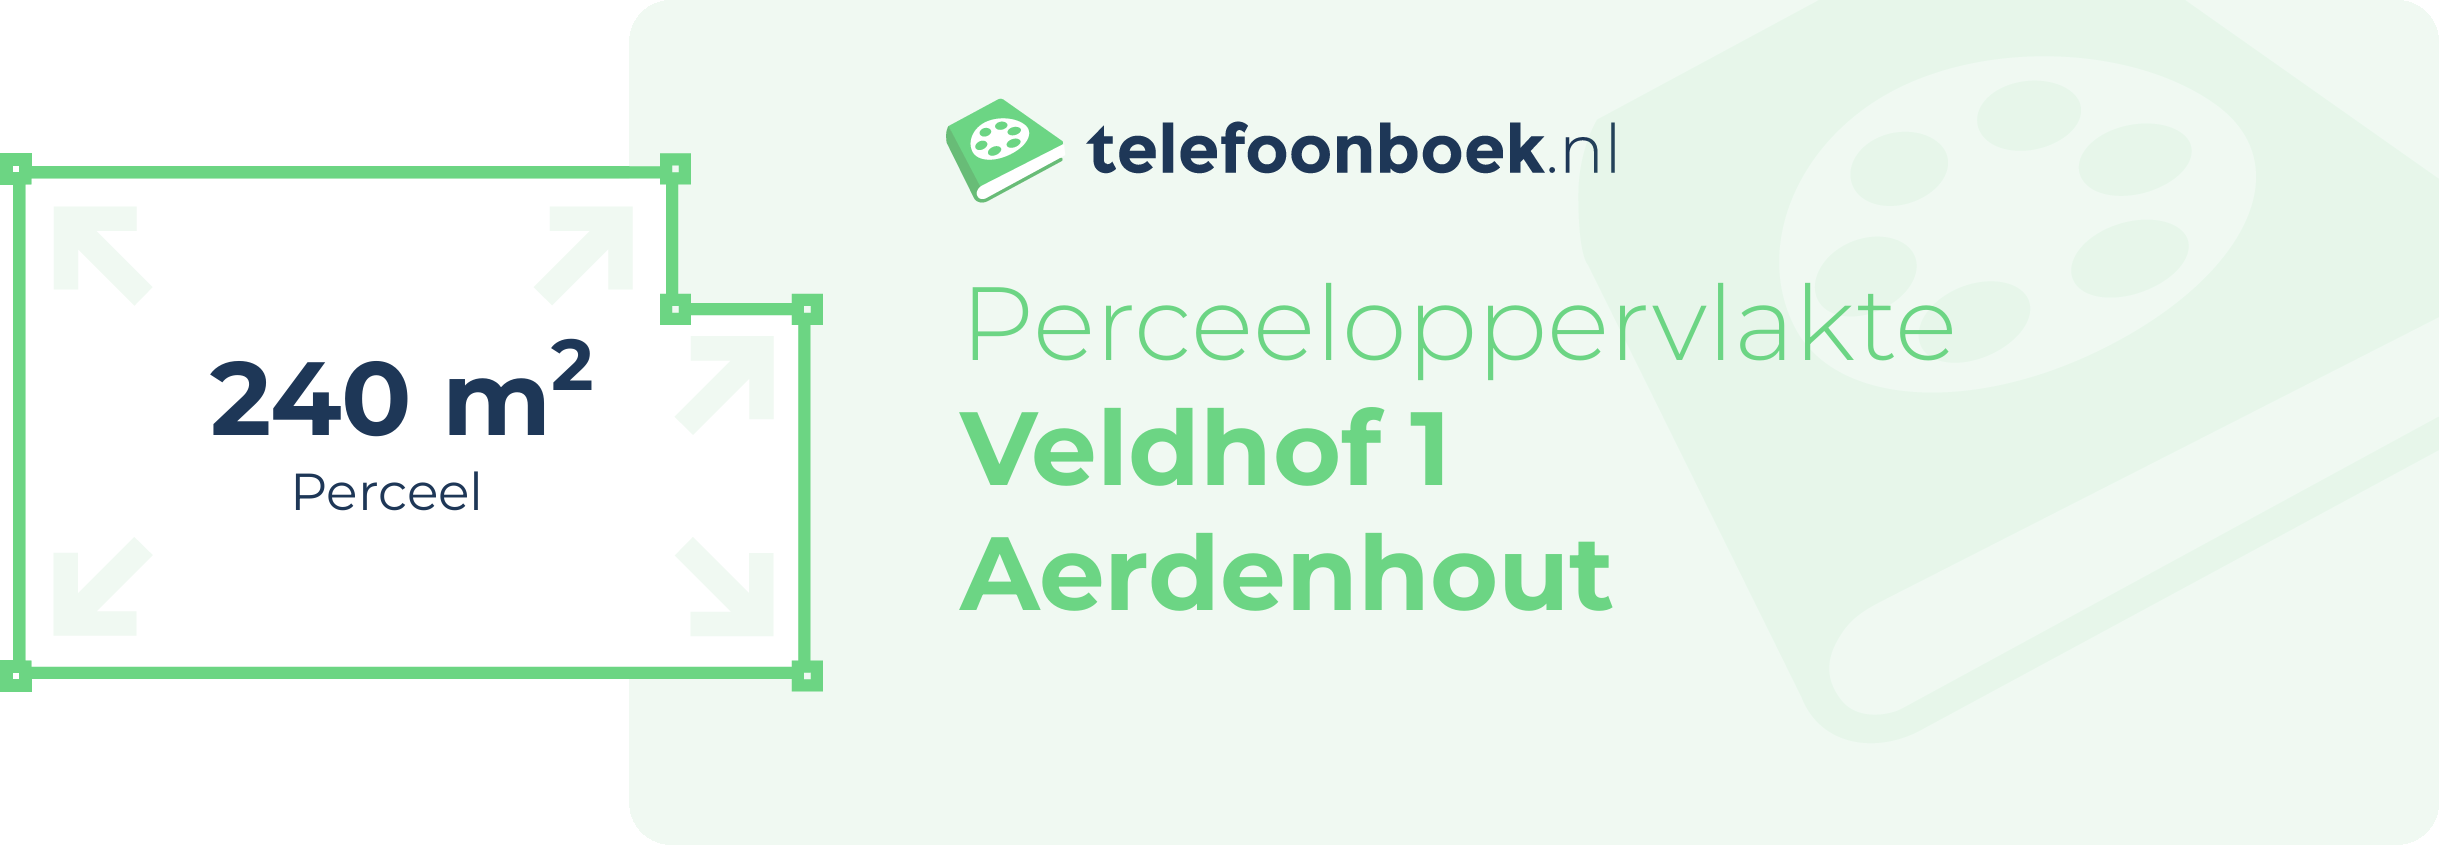 Perceeloppervlakte Veldhof 1 Aerdenhout